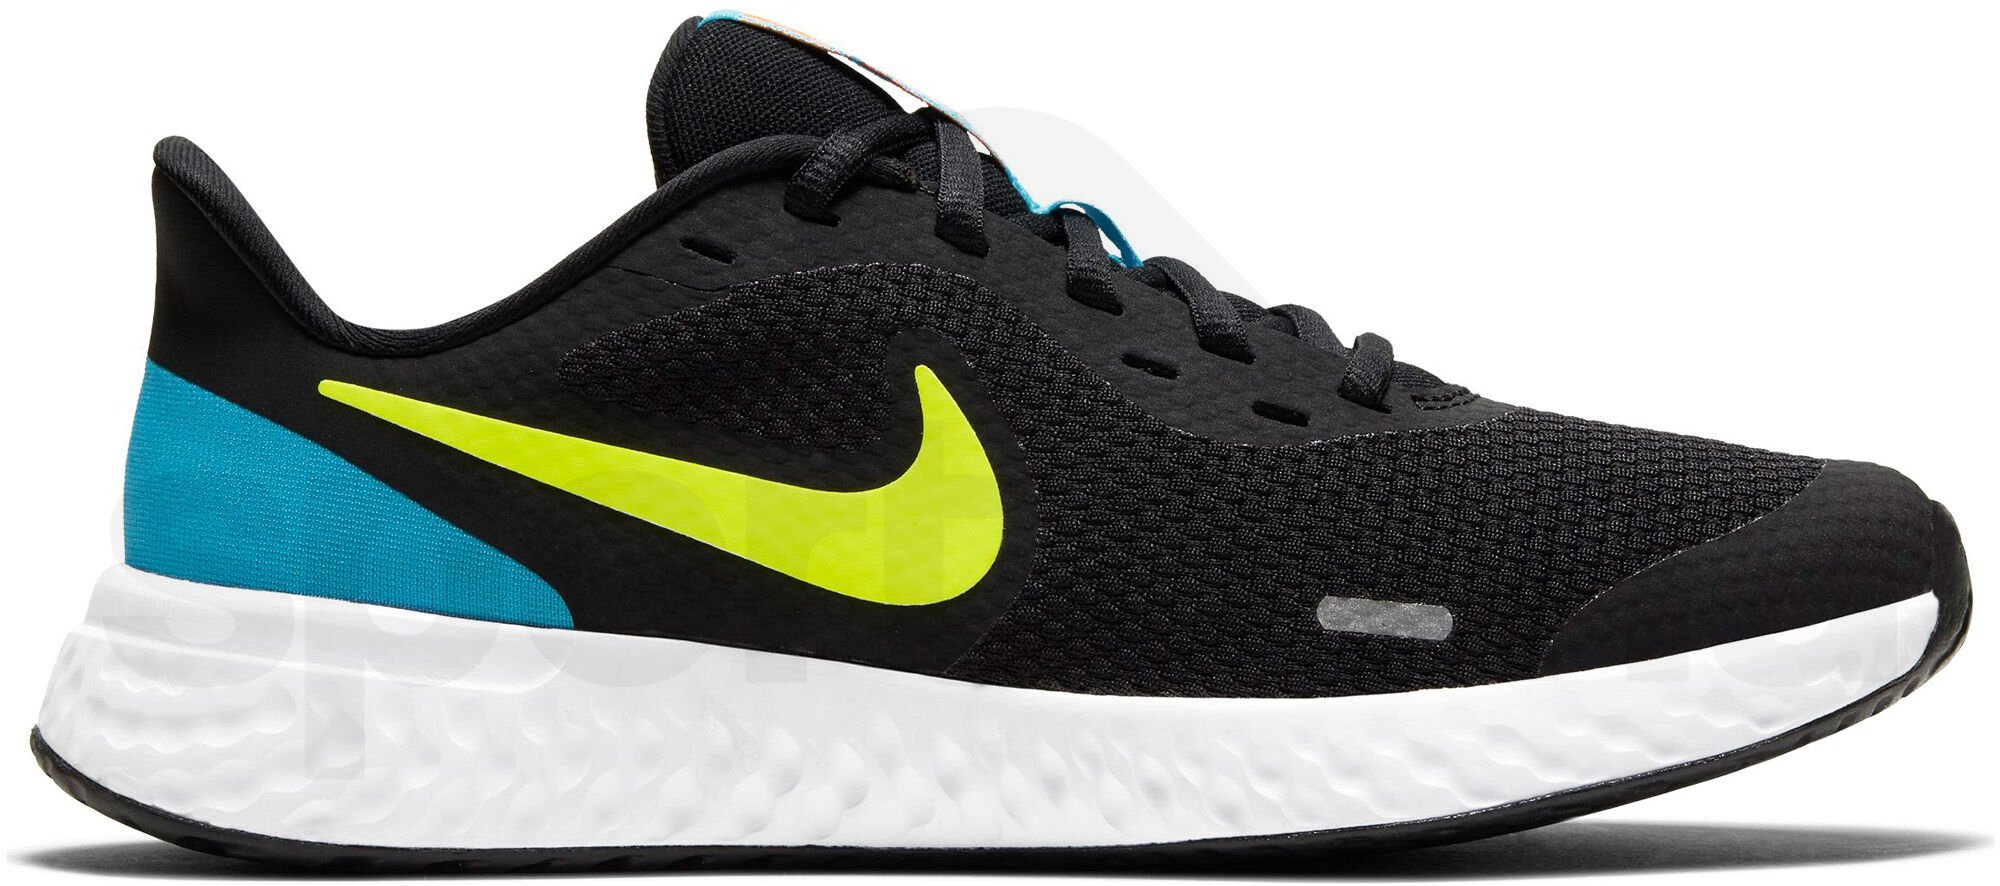 Obuv Nike Performance Revolution 5 - černá/žlutá